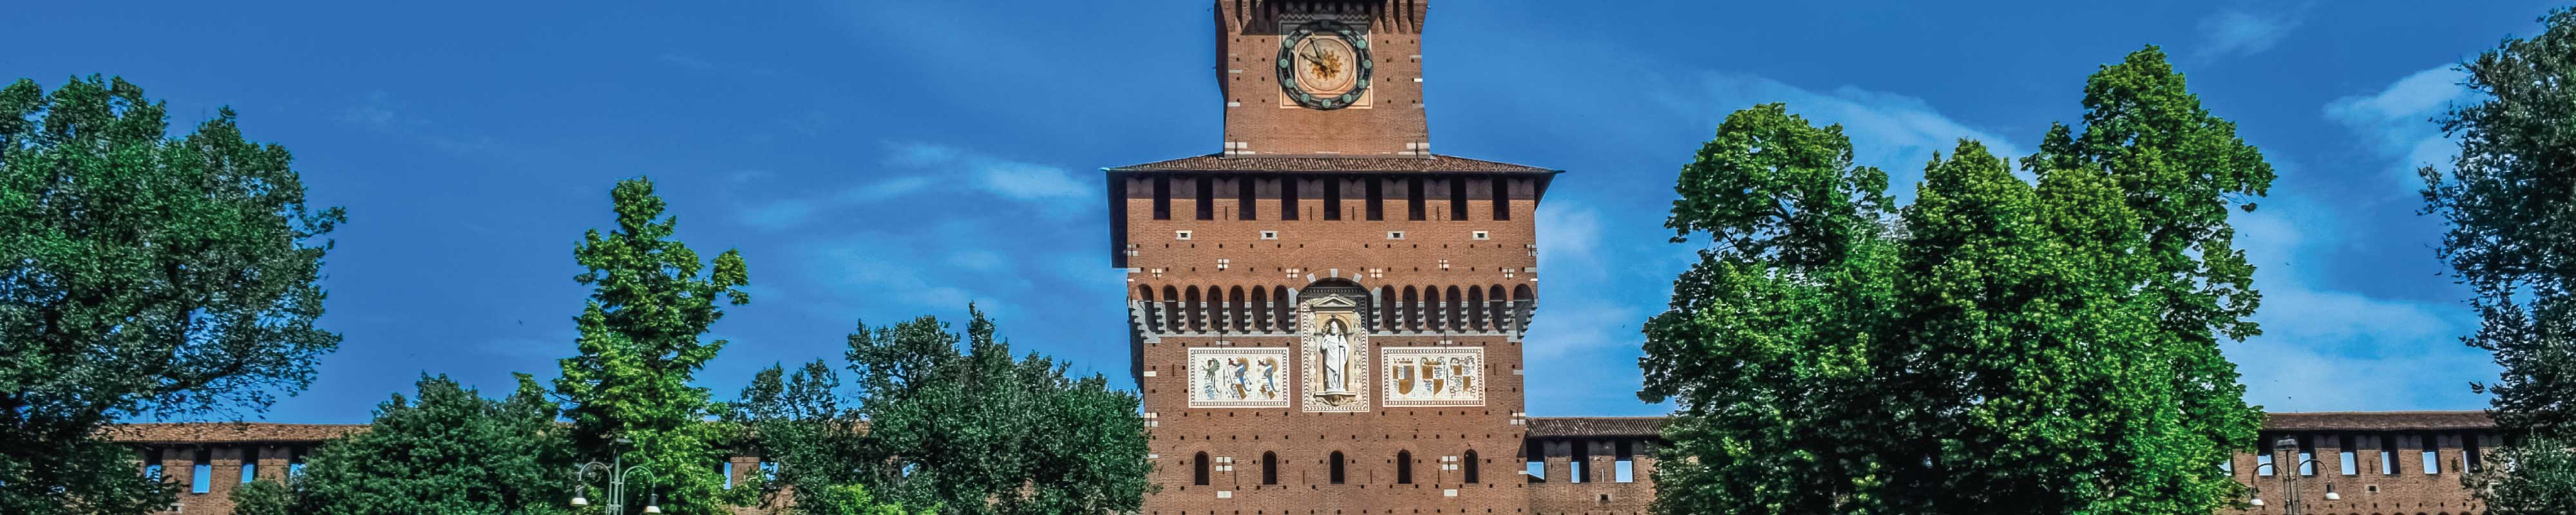 Gepäckaufbewahrung | Castello Sforzesco in Mailand - Nannybag